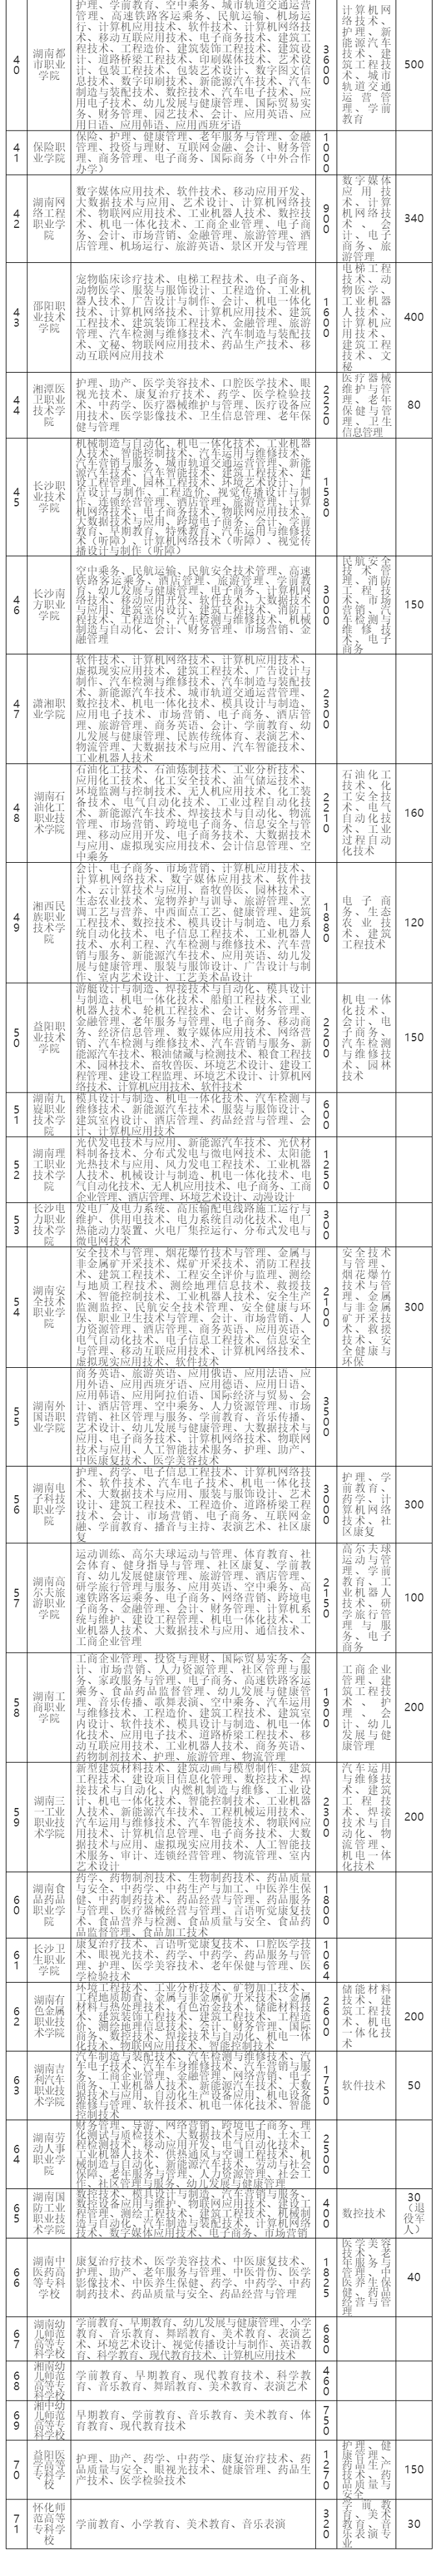 湖南：2020年高职院校（高专学校）单独招生专业及规模